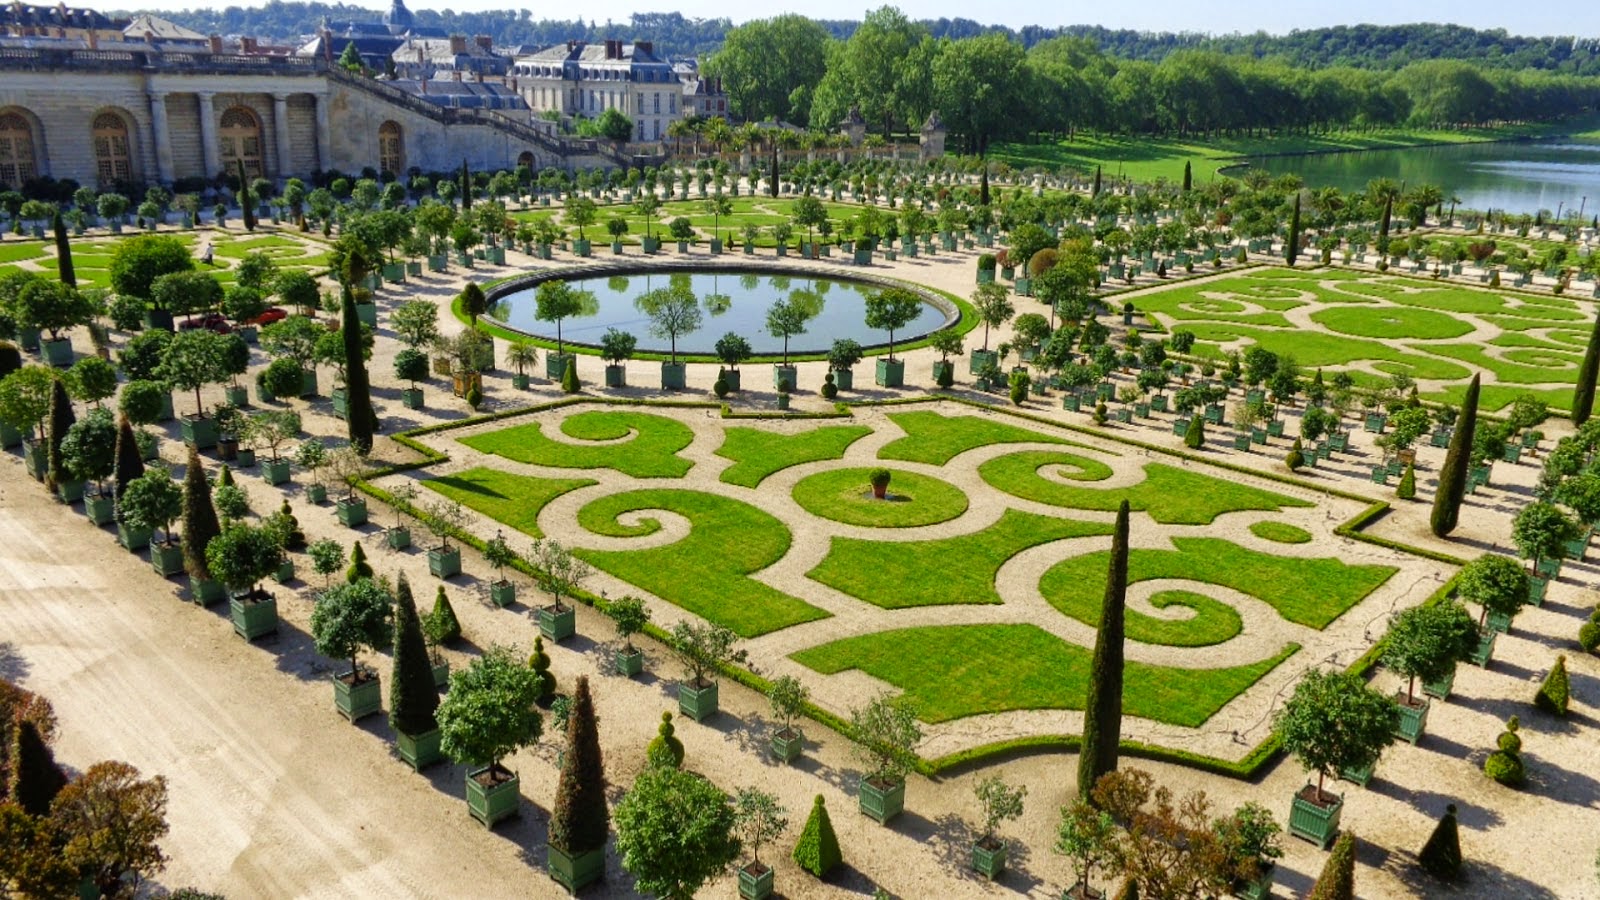 Cung điện Versailles - Lâu đài tráng lệ nhất Châu Âu | KIẾN TẠO